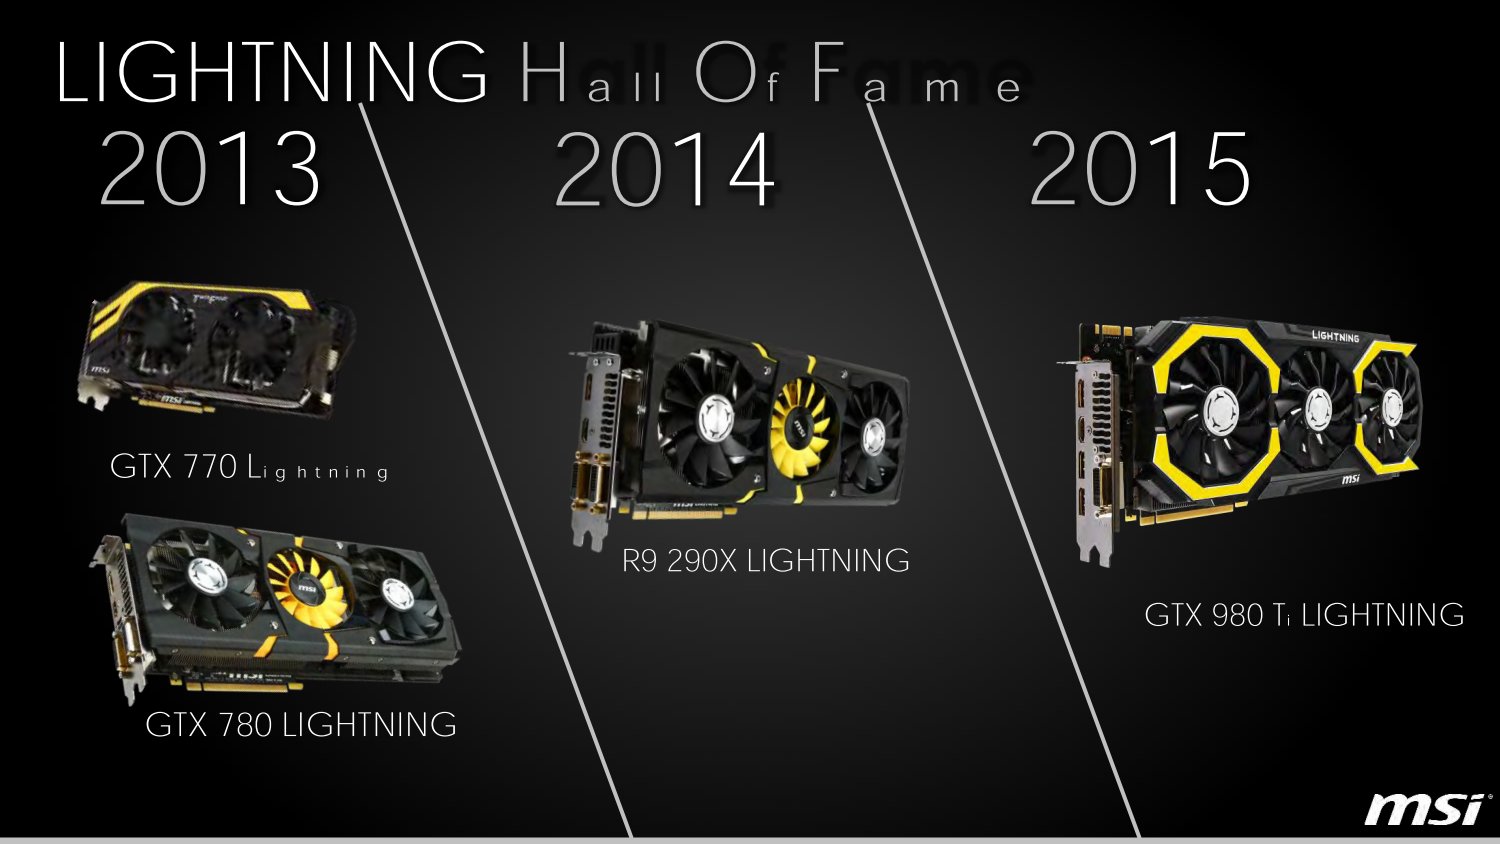 MSI Lightning von 2013 bis 2015